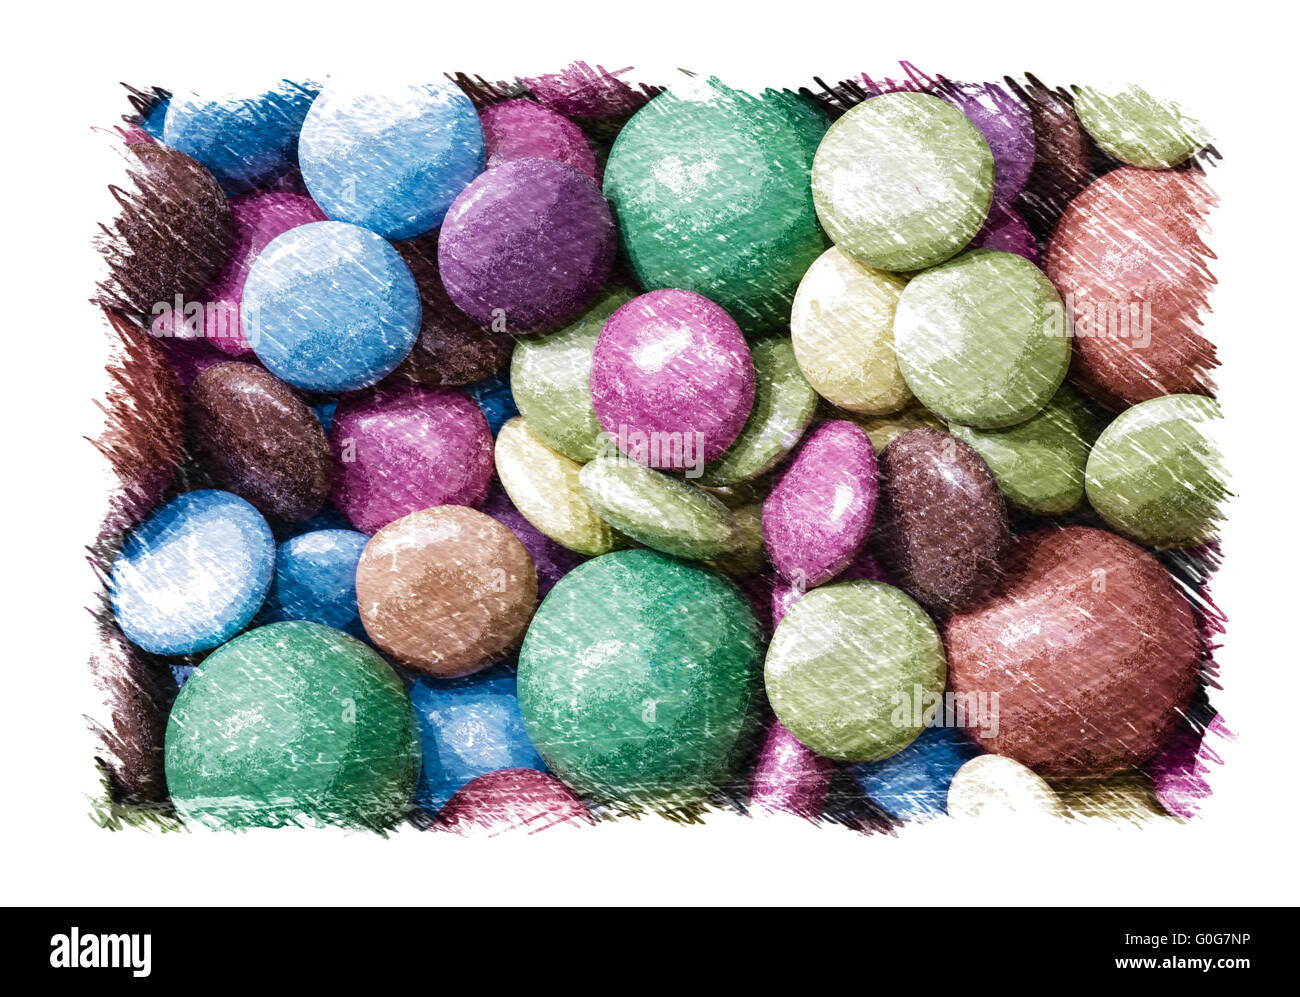 Un alterato immagine fotografica di dolci al cioccolato, che rappresentano i temi round e circoli. Foto Stock